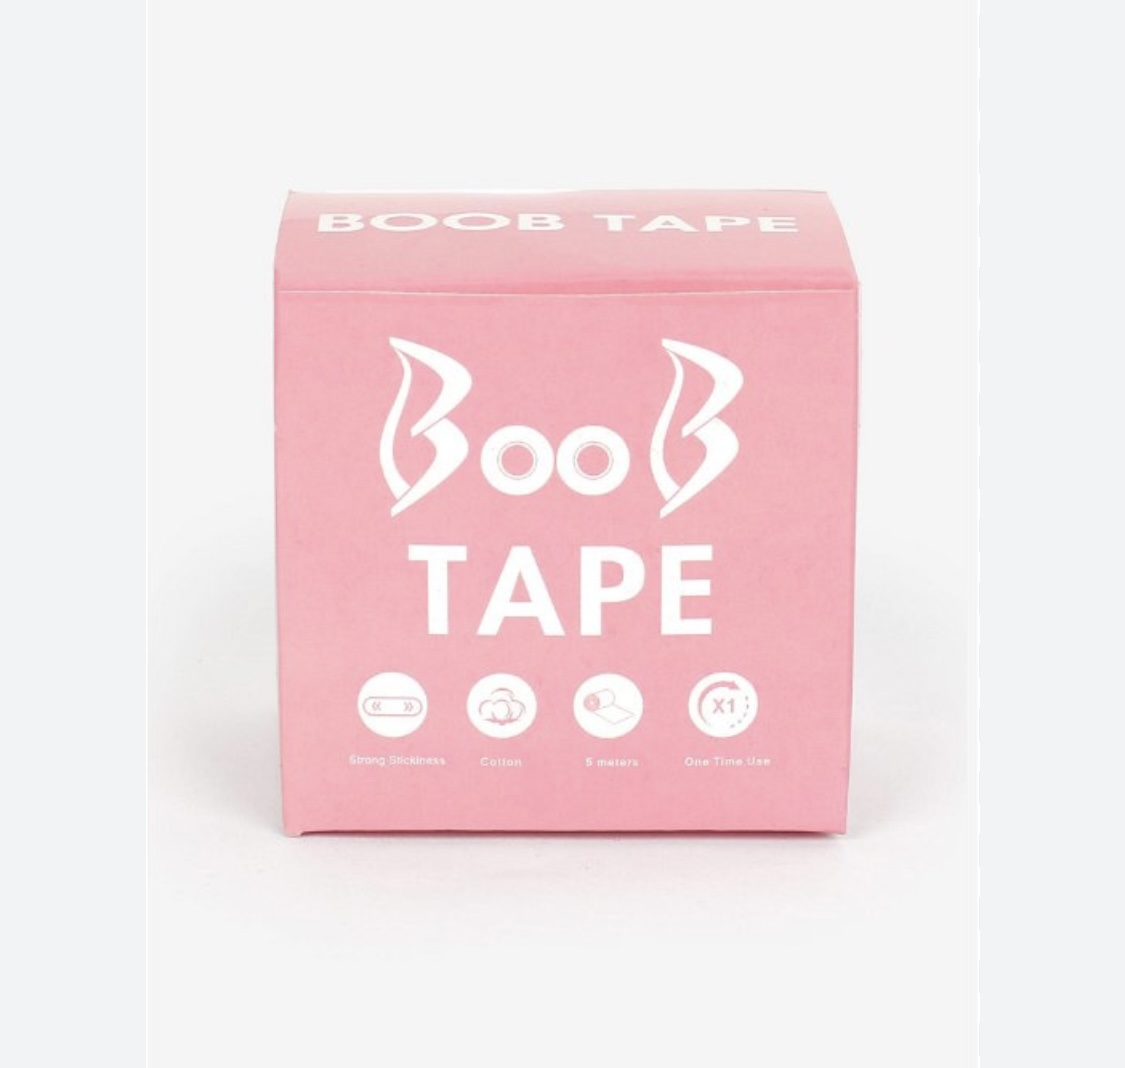 Breast boobs tape 